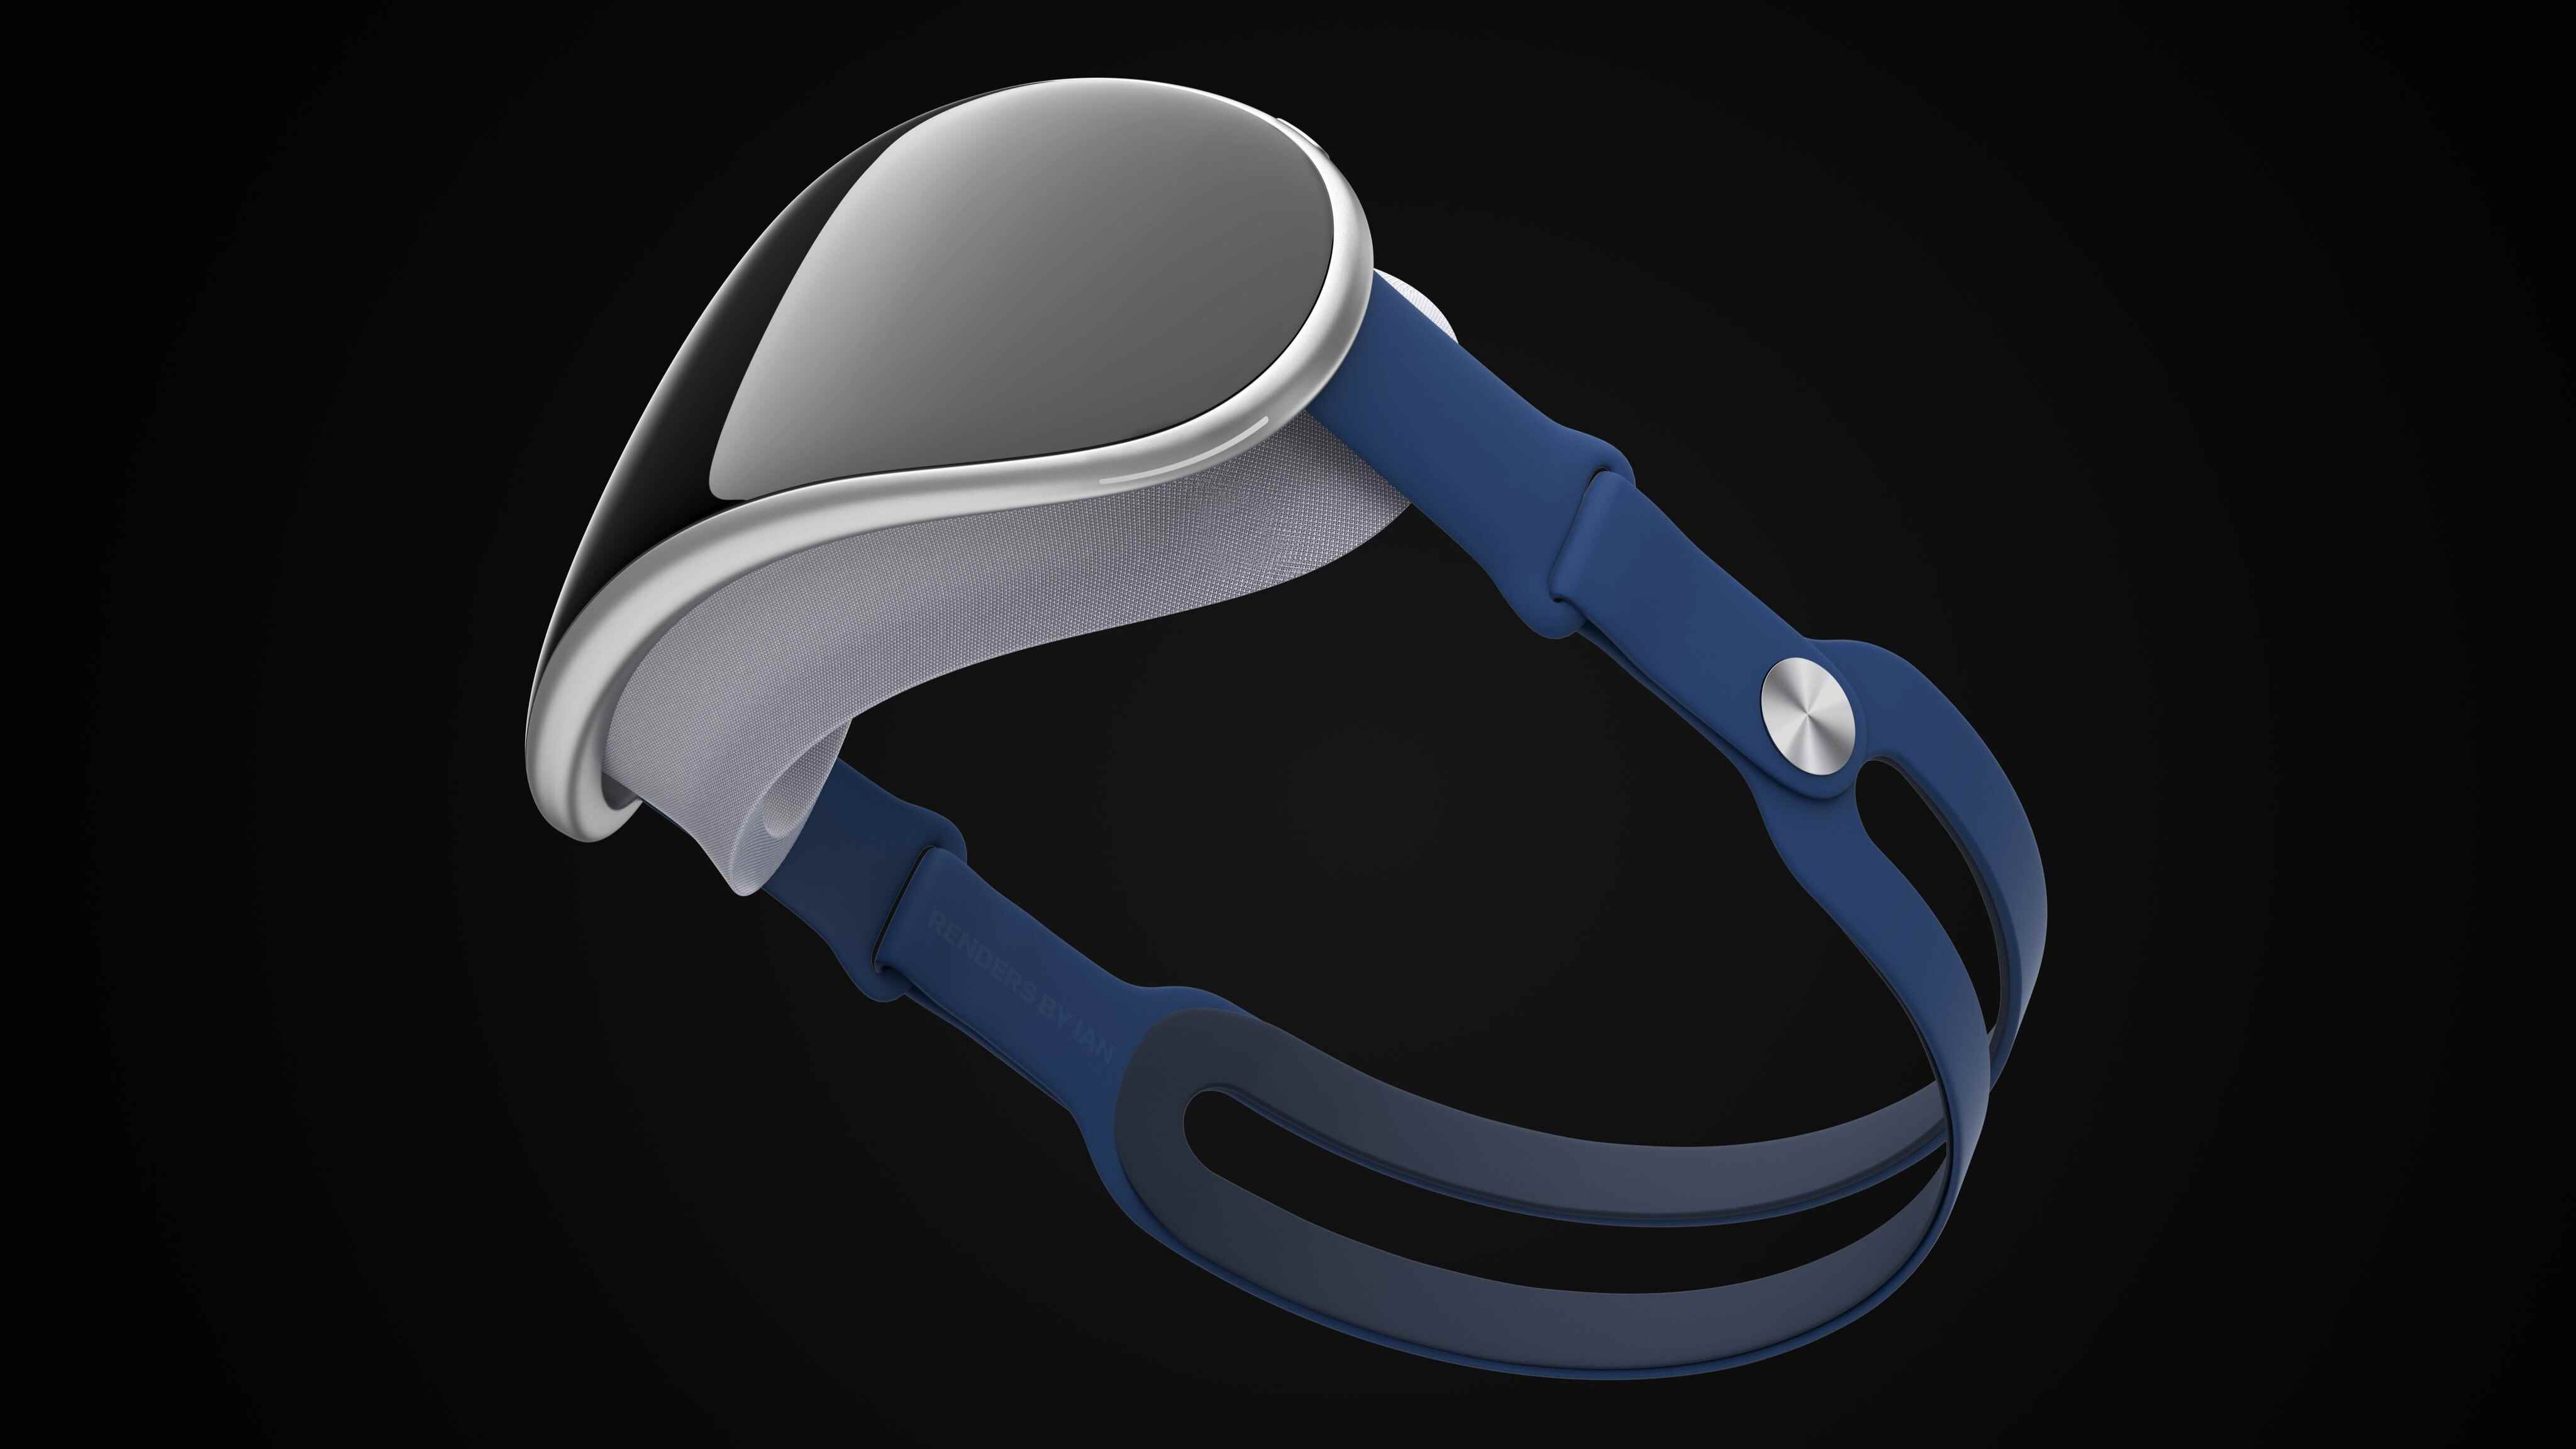 İmaj Katkısı - Ian Zelbo - Apple AR/VR kulaklığının üretiminin yaklaşık 1500 ABD dolarına mal olduğu bildiriliyor